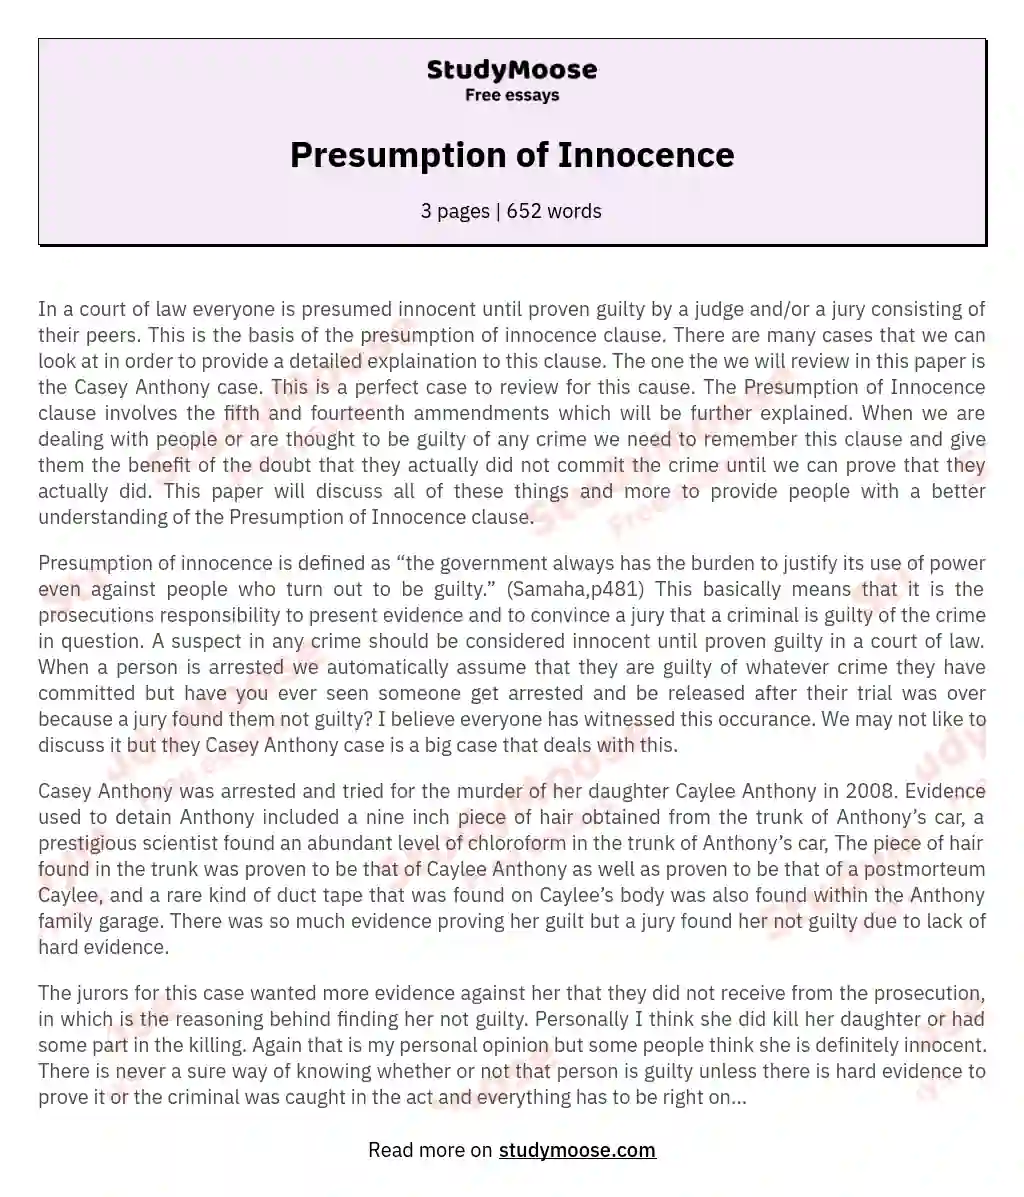 Presumption of Innocence essay